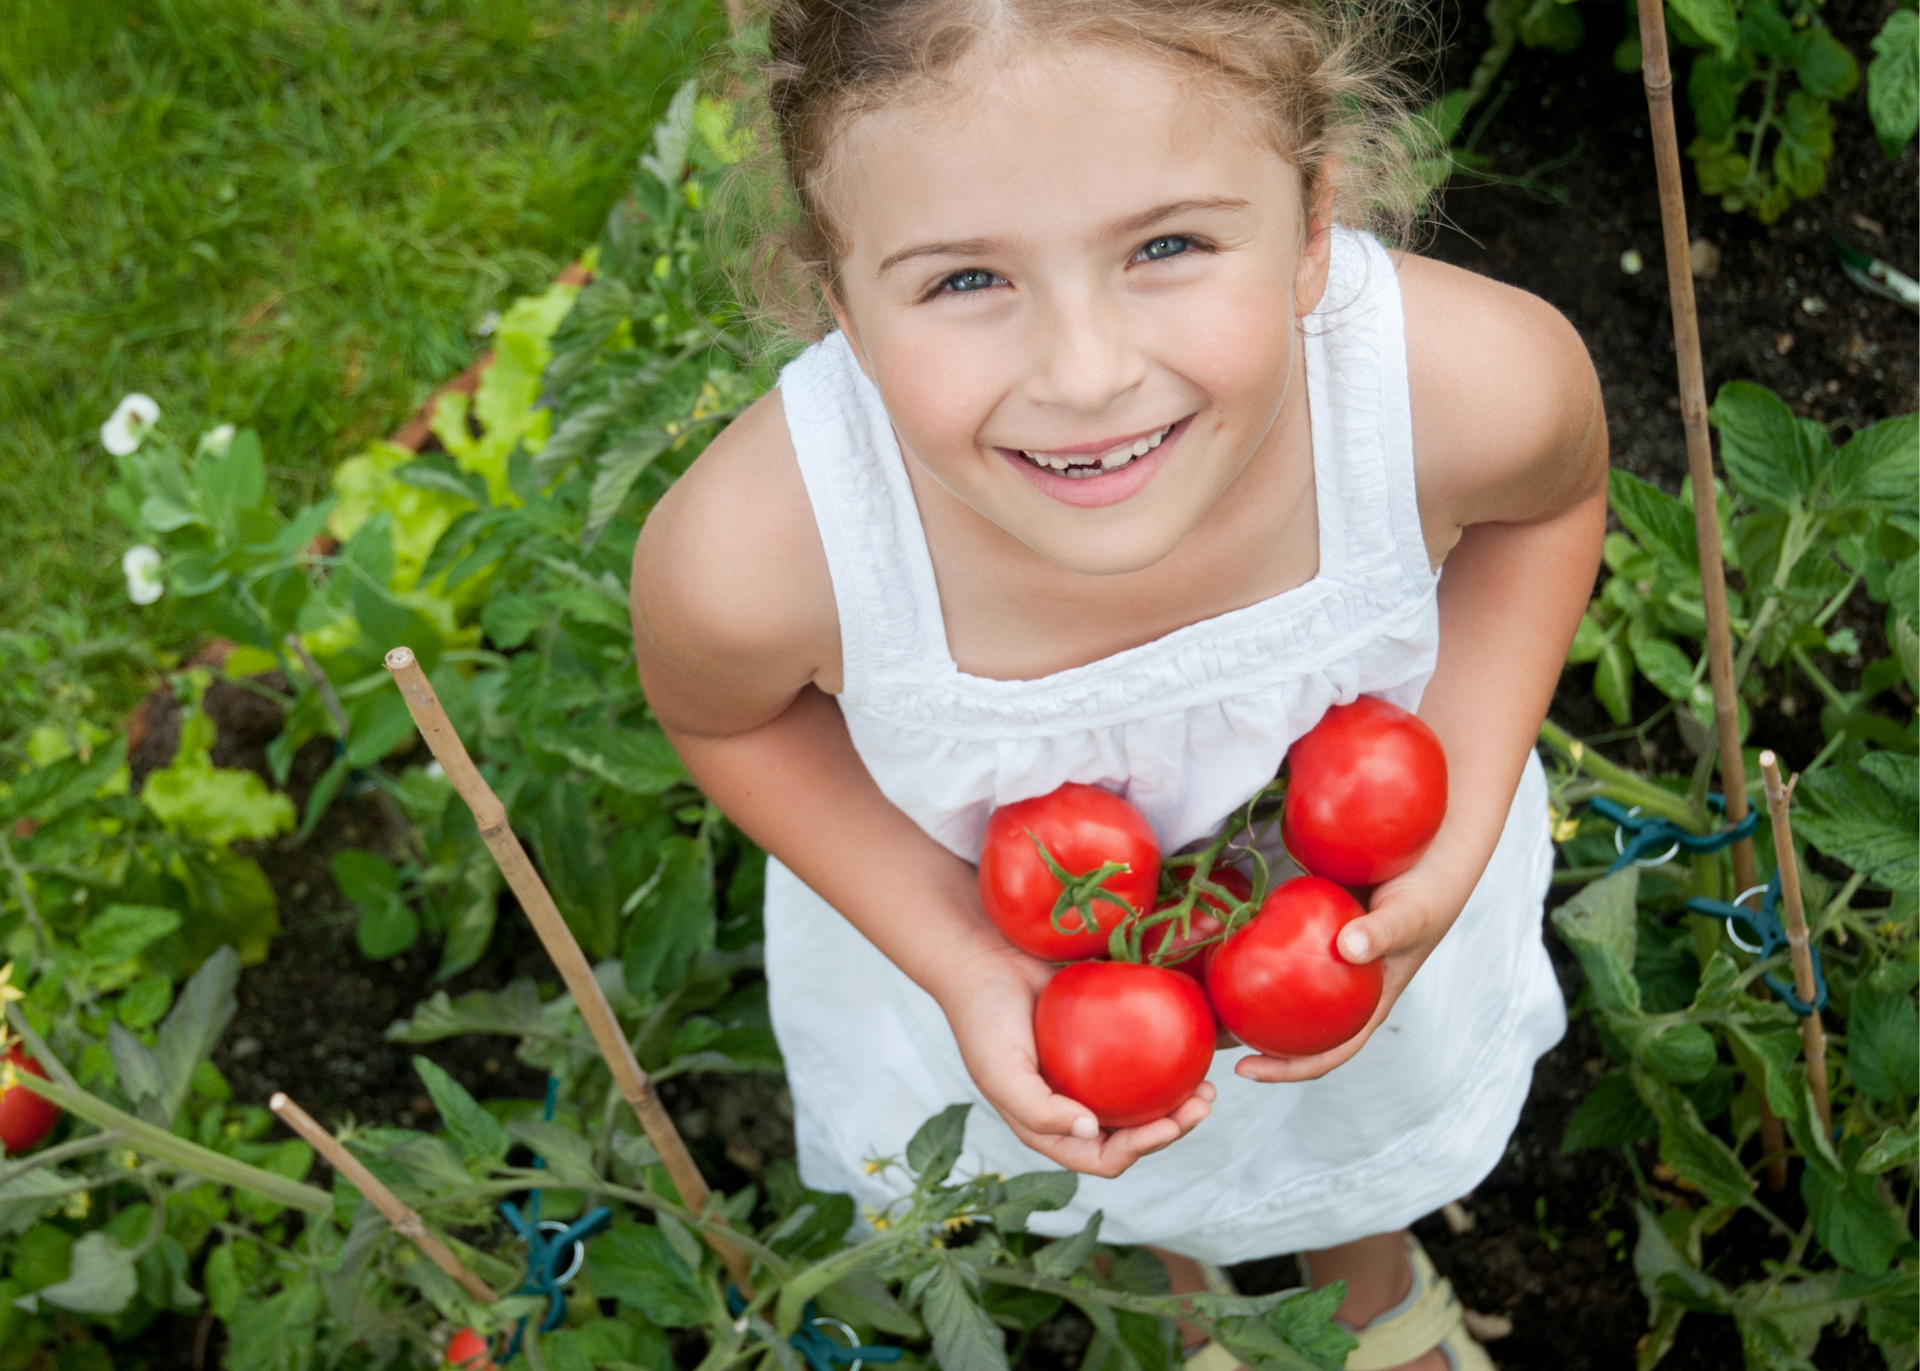 Little girl holding garden tomatoes smiling